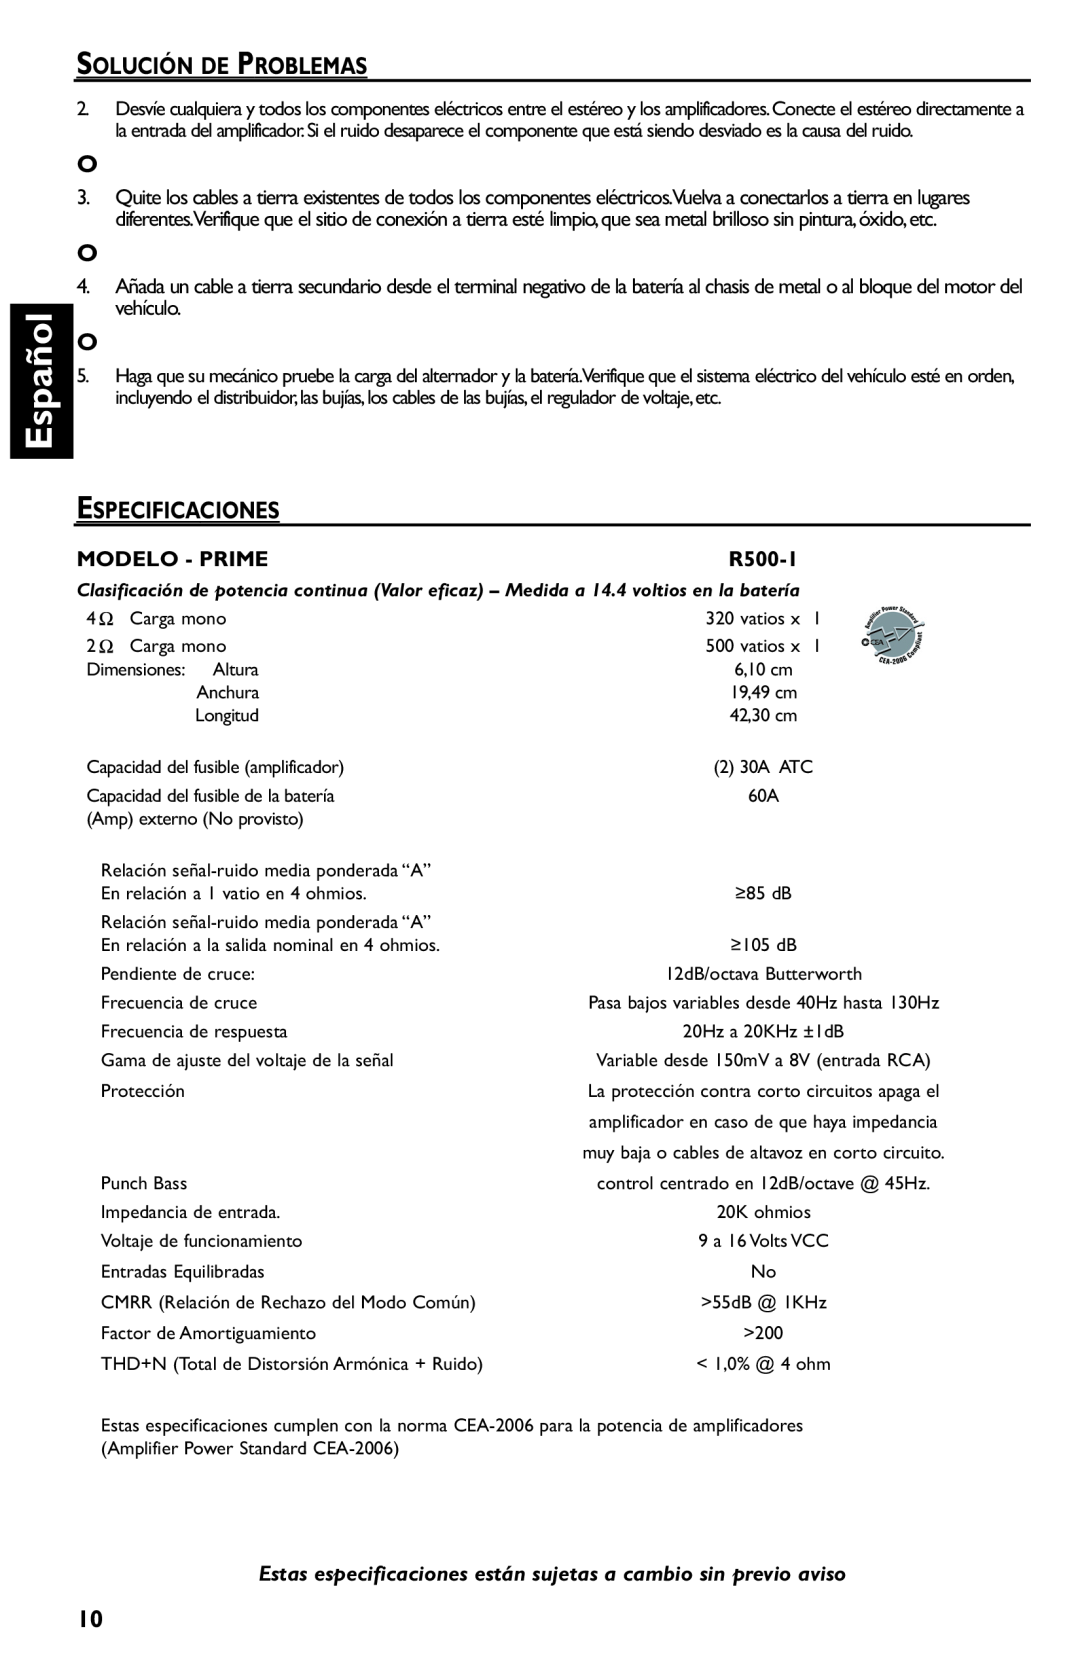 Rockford Fosgate R500-1 manual Español, Solución De Problemas, Especificaciones, Modelo - Prime 